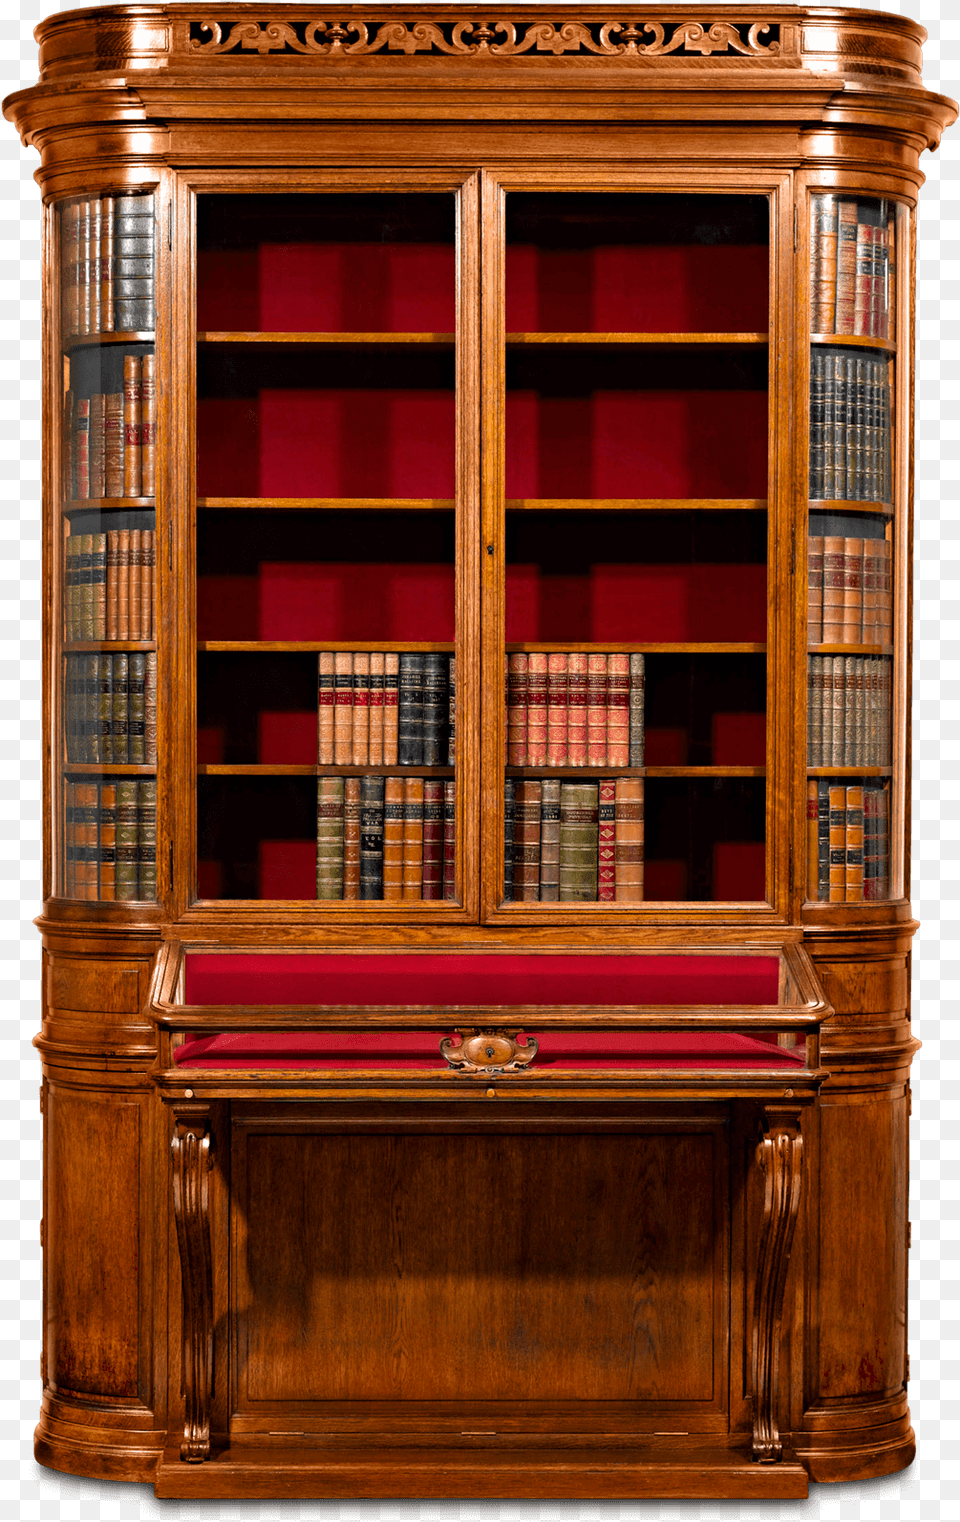 Victorian Era Bookshelf, Closet, Cupboard, Furniture, Cabinet Png